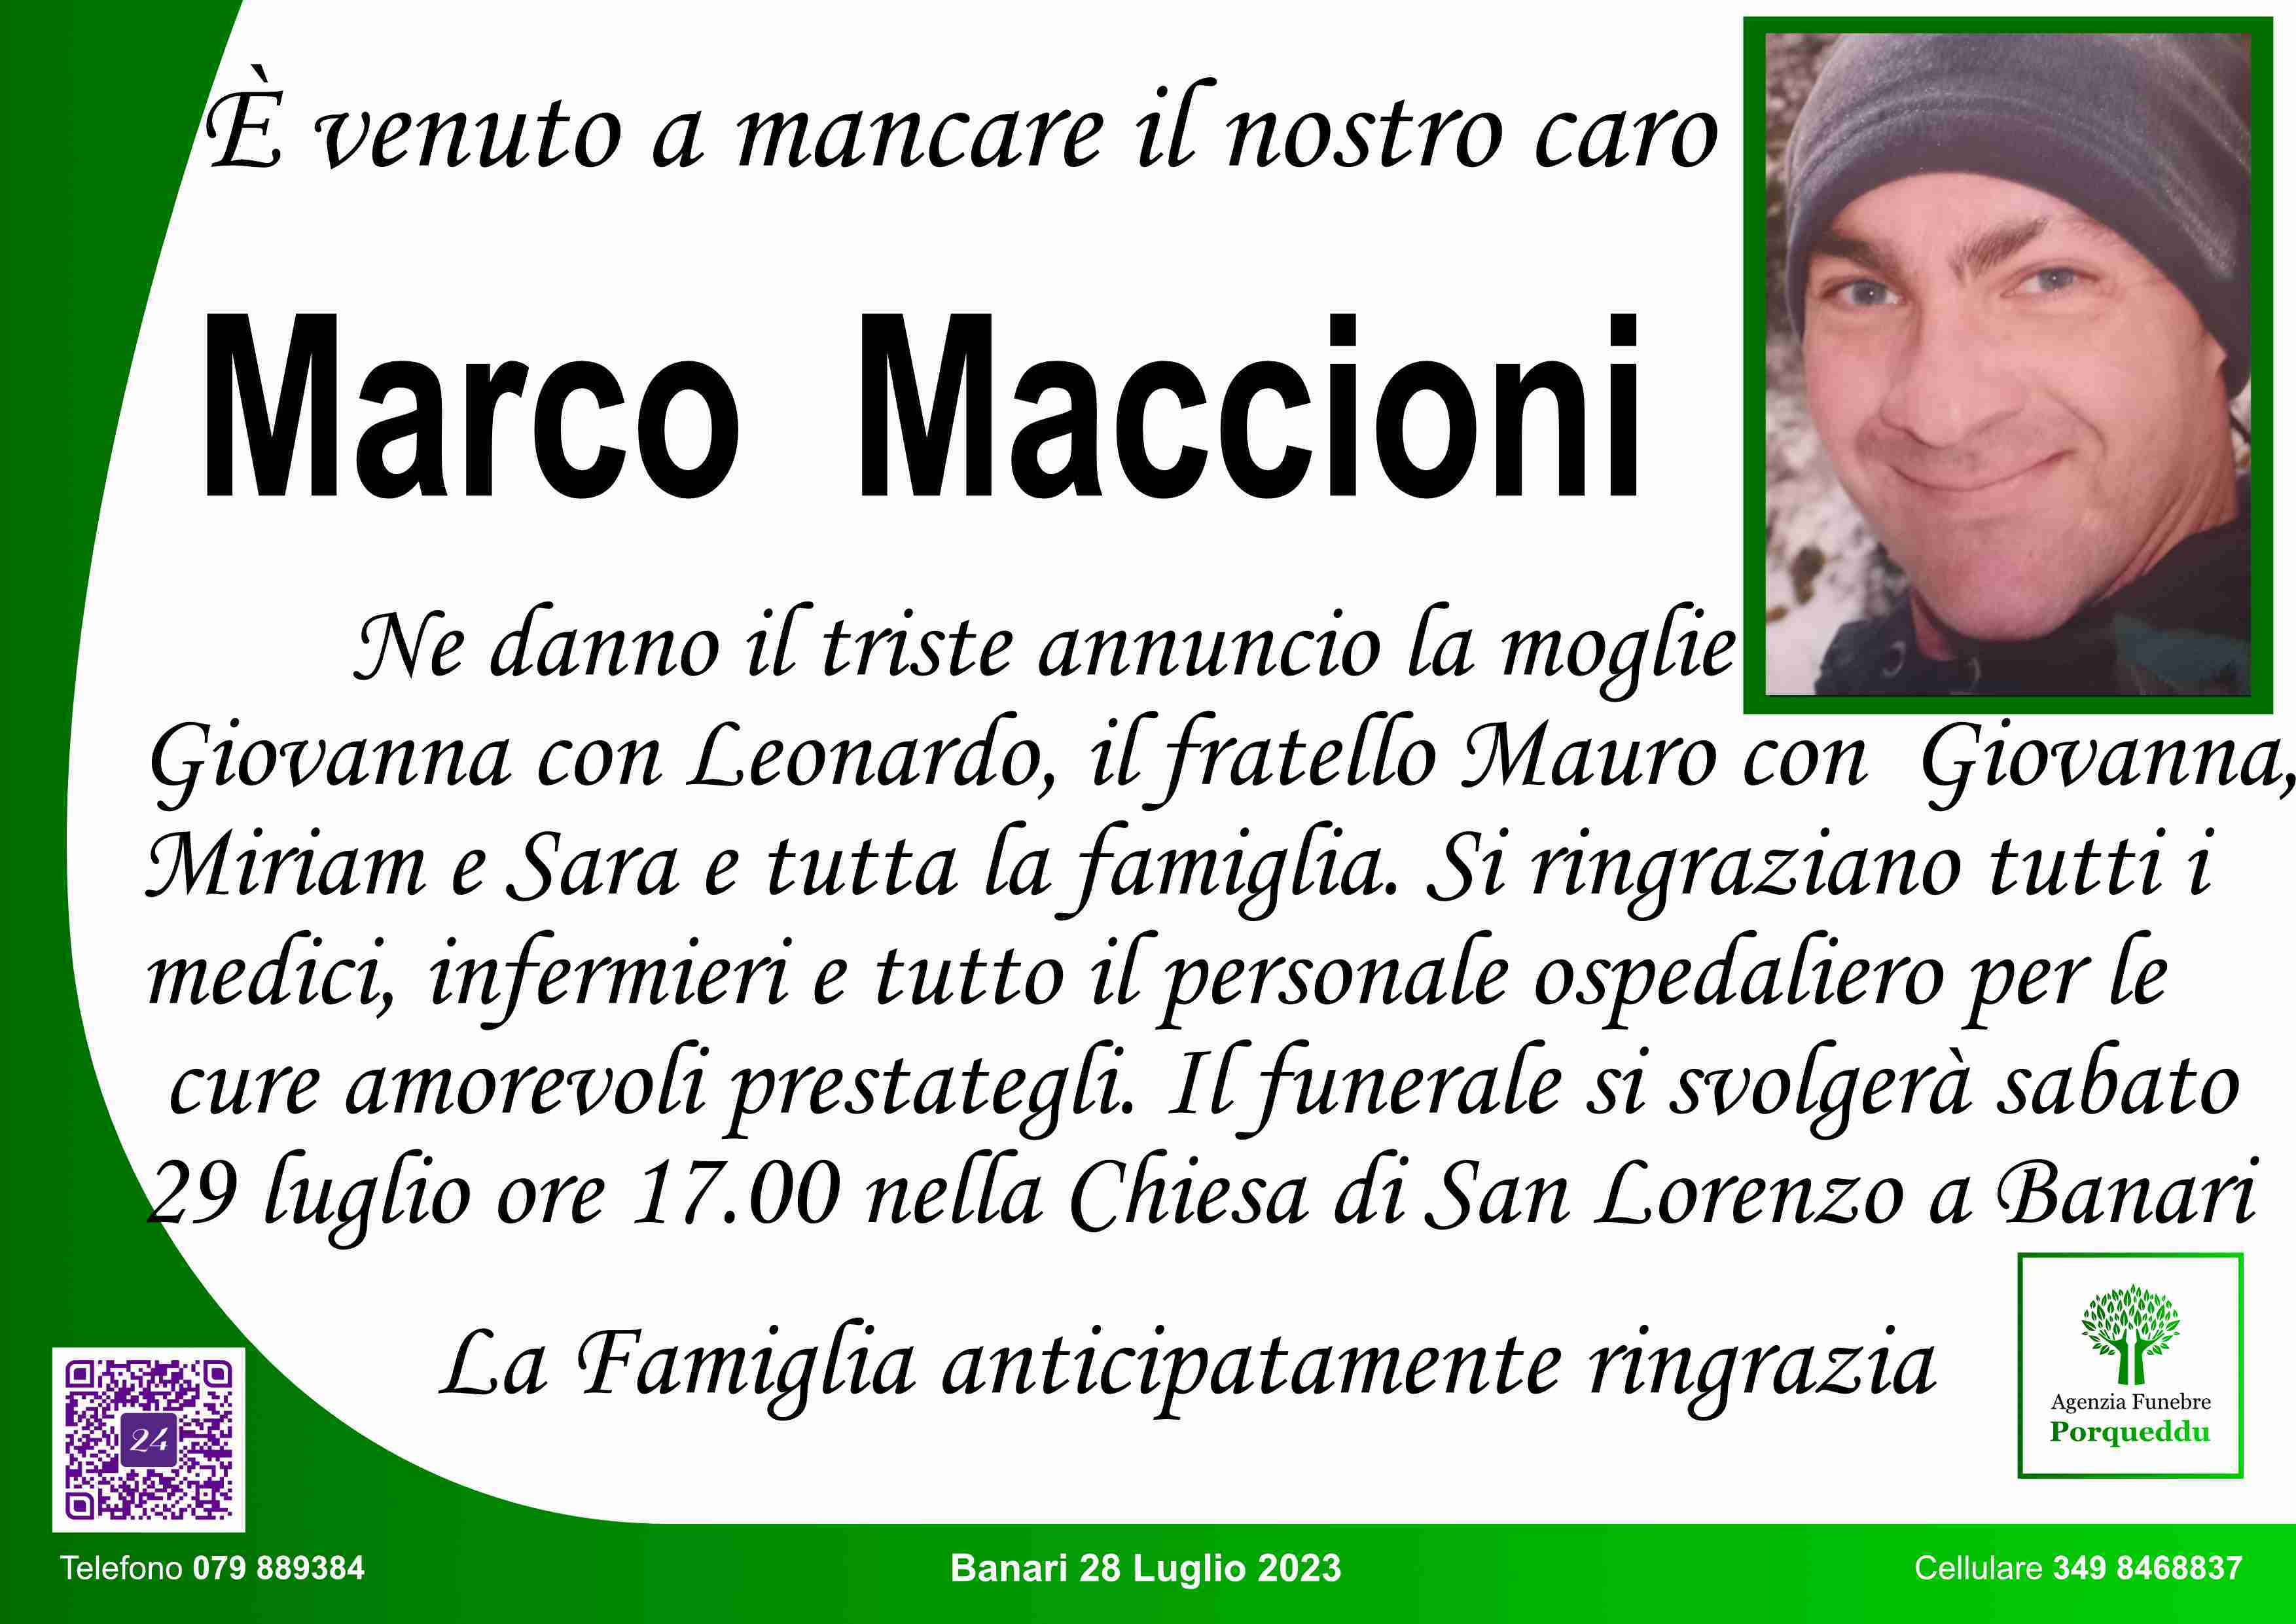 Marco Maccioni